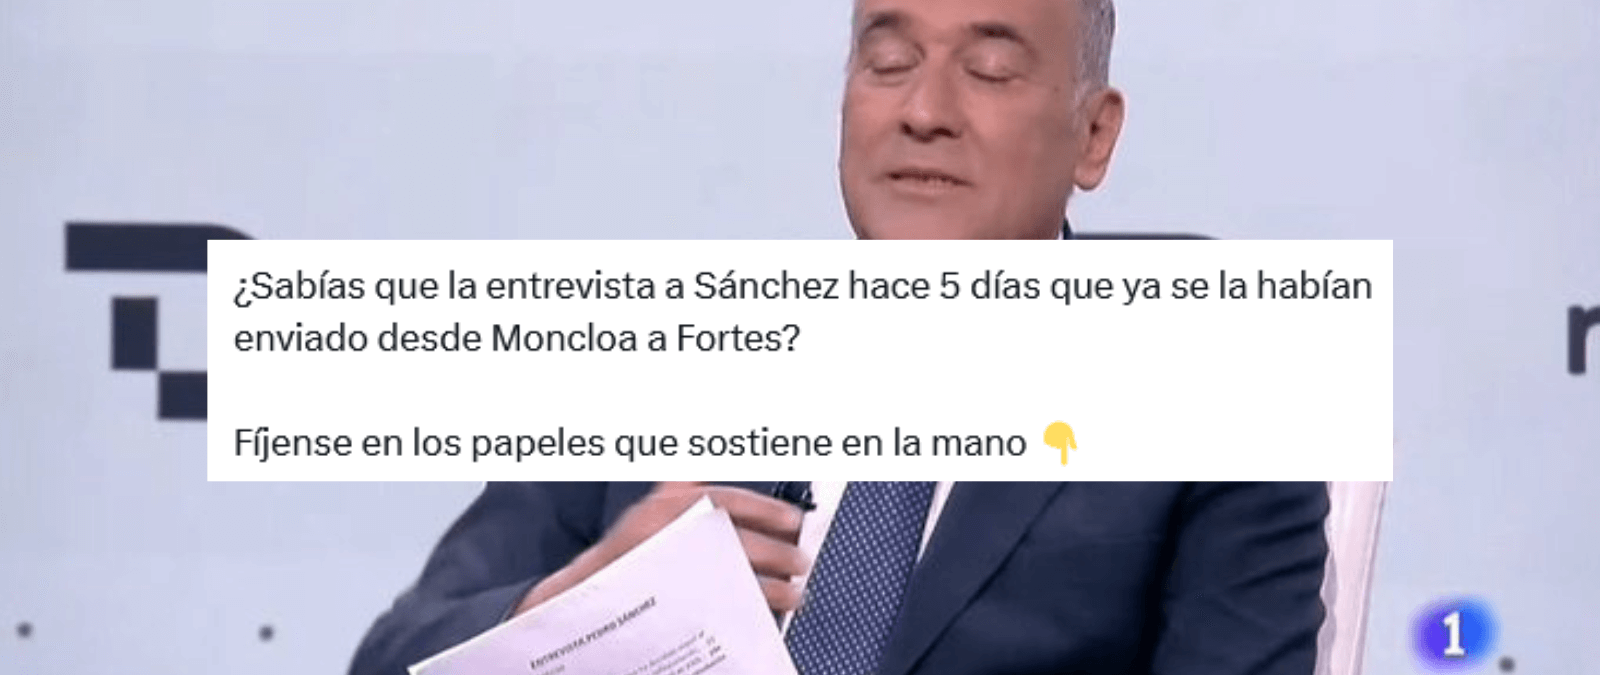 La entrevista a Pedro Sánchez en TVE del 29 de abril: no hay pruebas de que las preguntas se enviasen cinco días antes desde La Moncloa al periodista Xabier Fortes